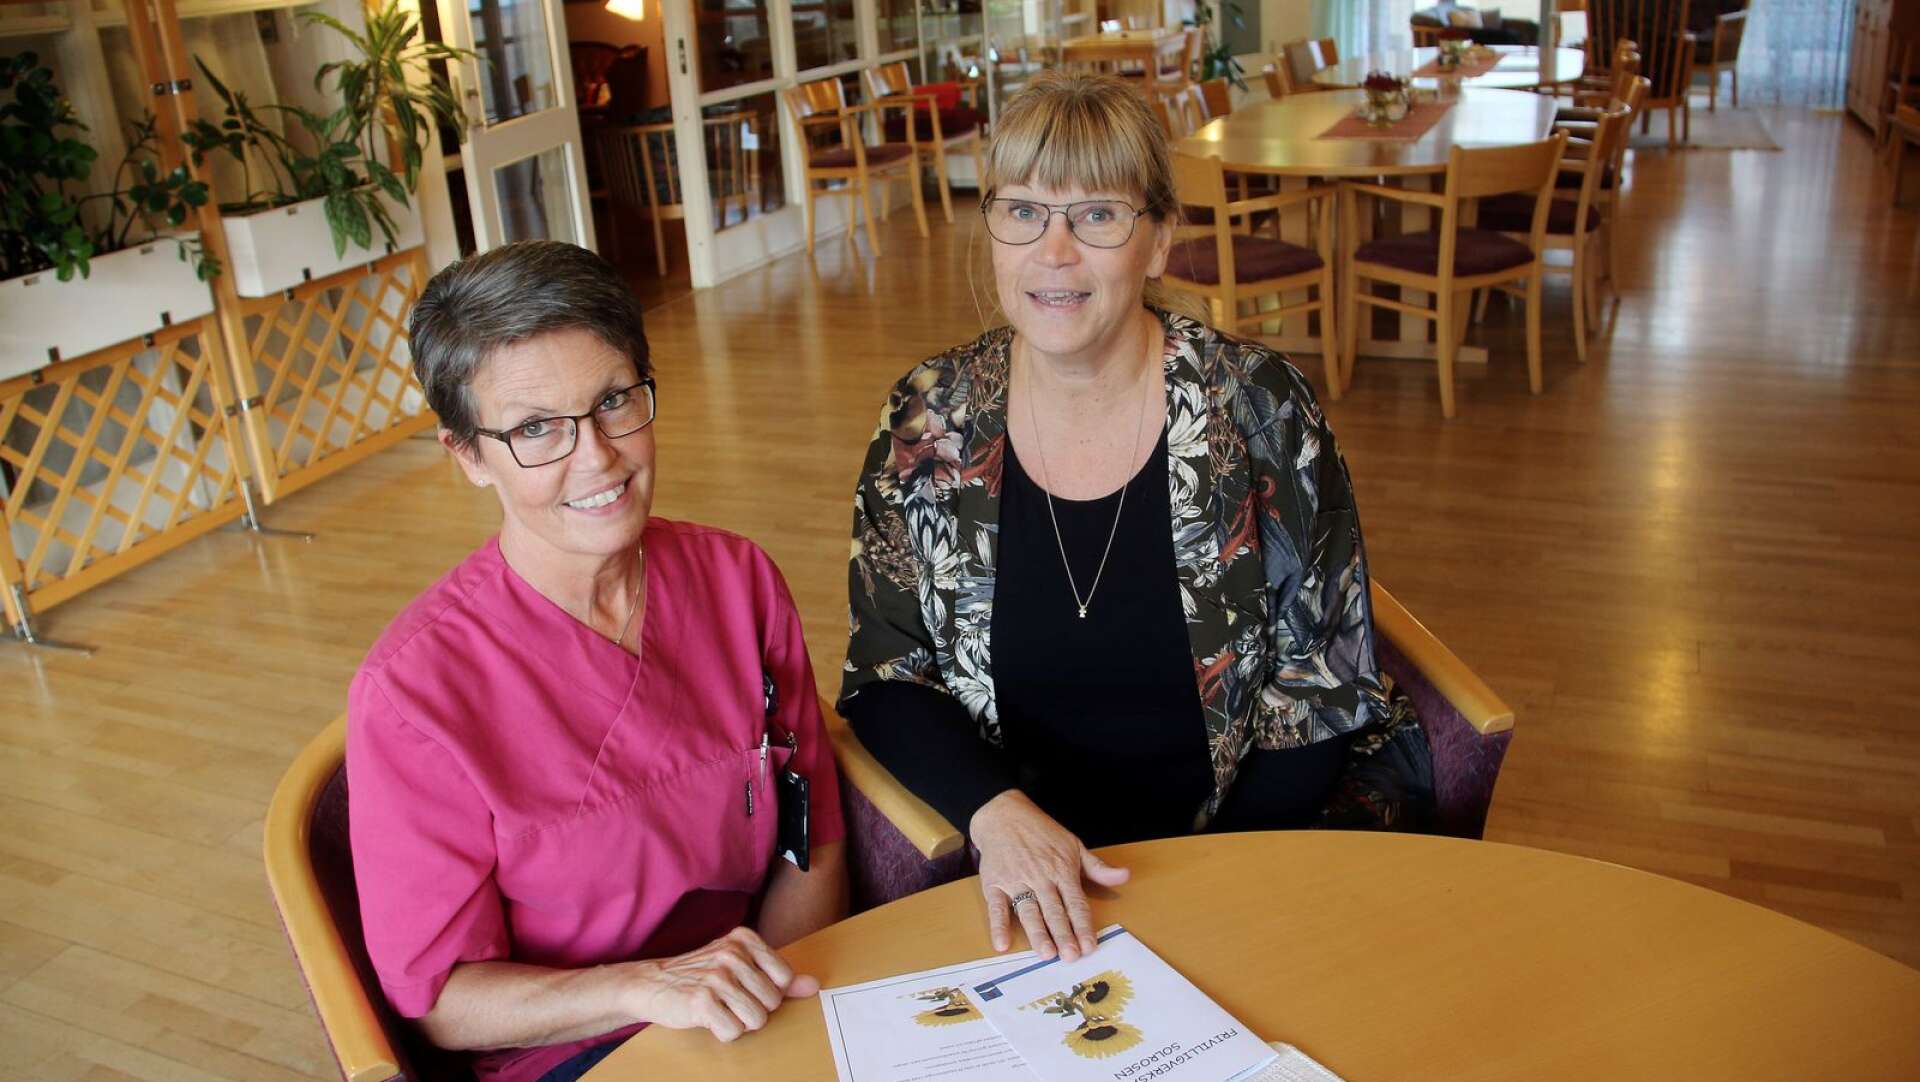 Yvonne Karlsson, frivilligsamordnare, och Susanne Johansson, enhetschef, är aktivt inblandade i tillkomsten av frivilligverksamheten Solrosen i Dals-Ed.